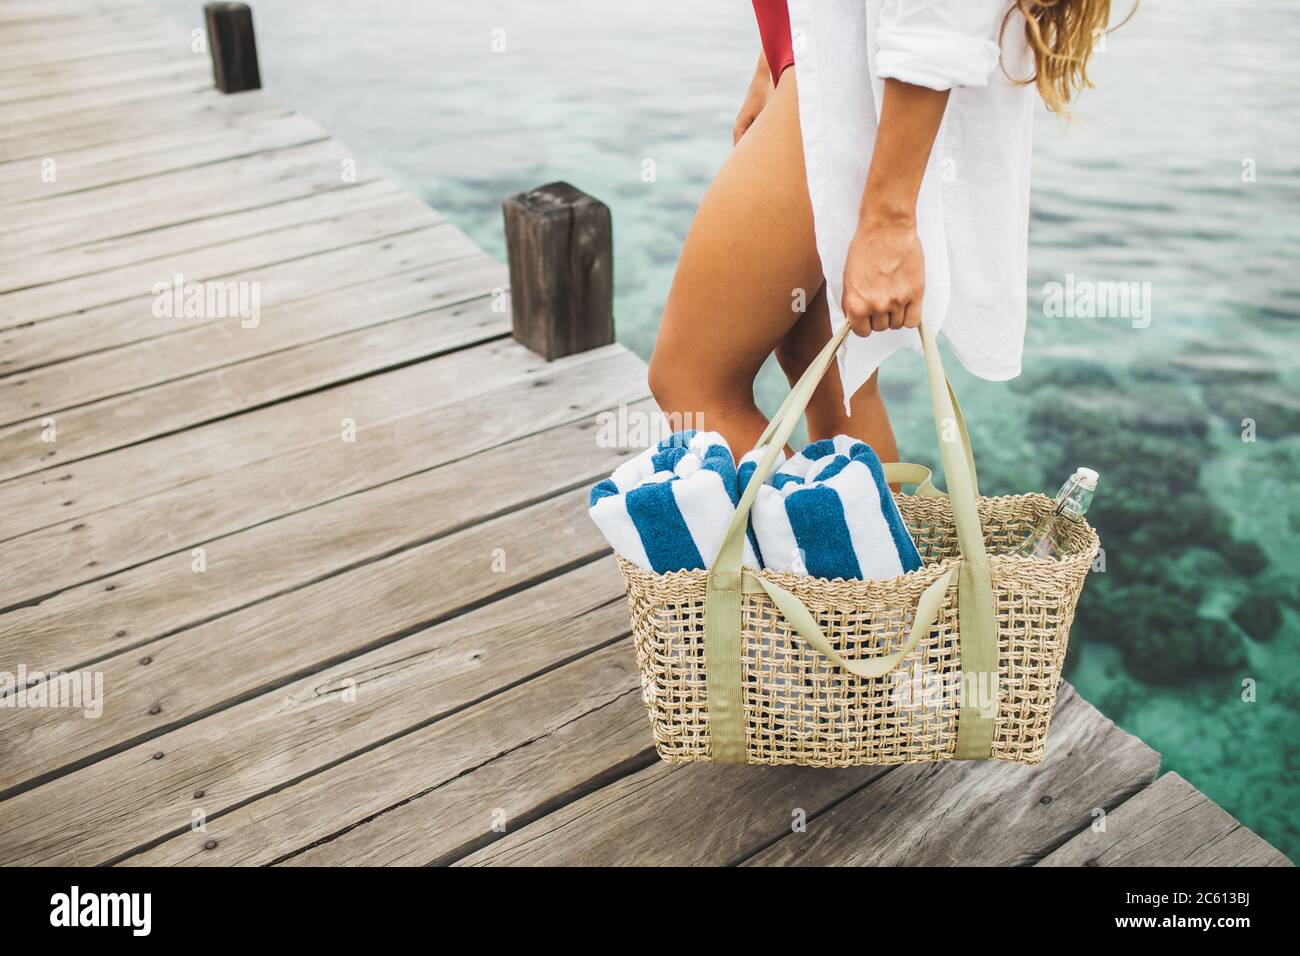 Femme tenant un sac en osier avec deux serviettes de plage et une bouteille  de verre pour l'eau et aller à la plage. Concept écologique et zéro déchet  Photo Stock - Alamy